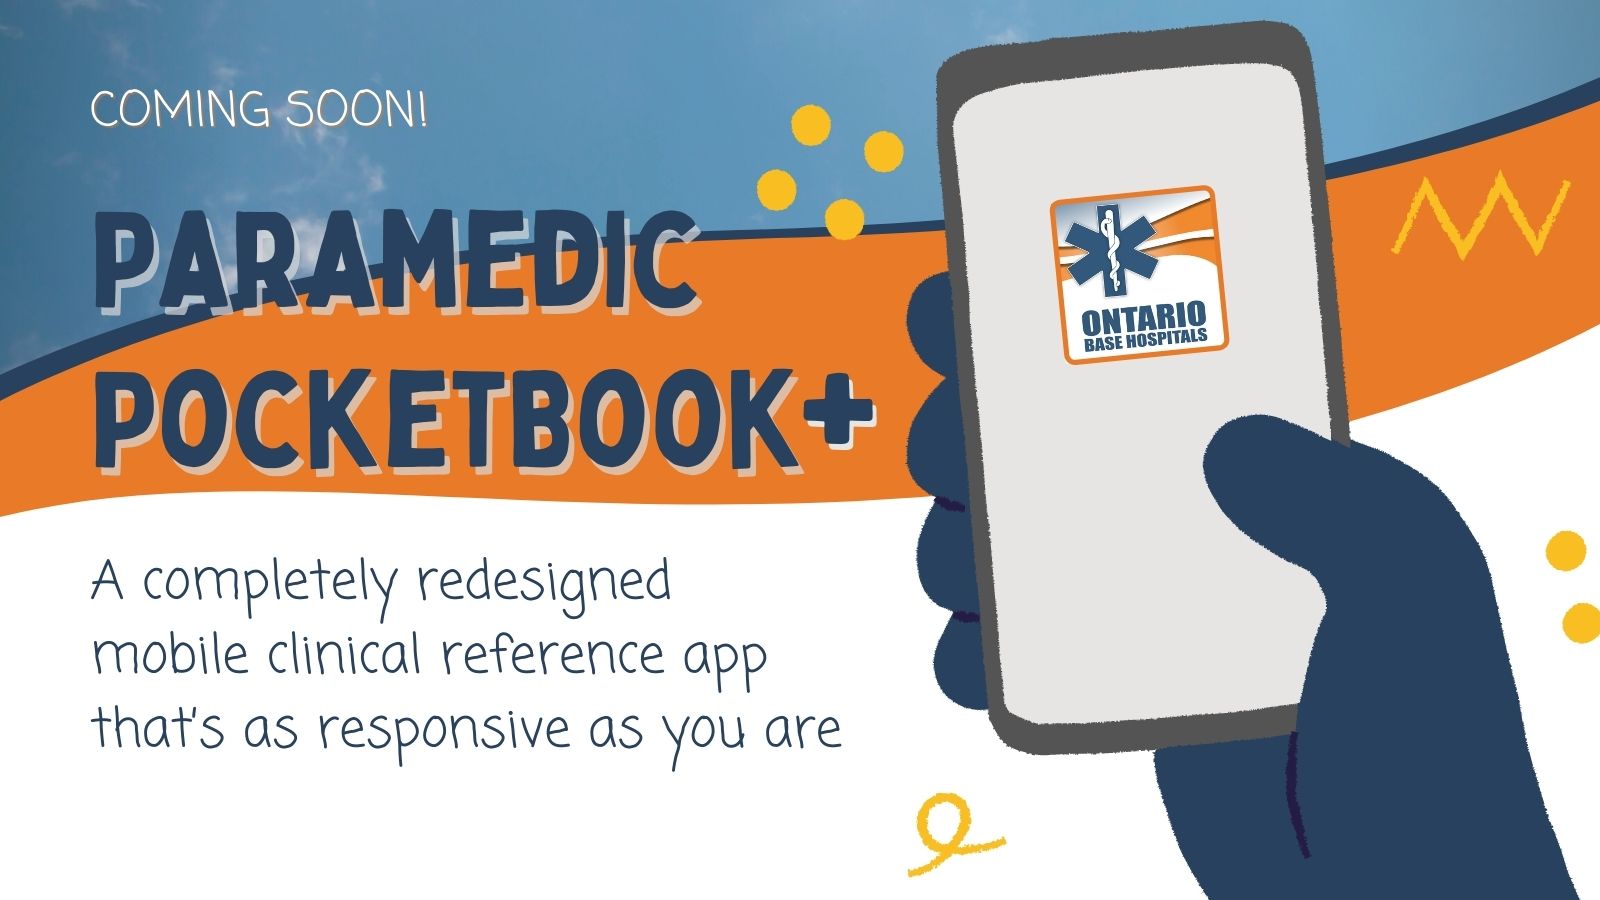 Paramedic Pocketbook+ Coming Soon